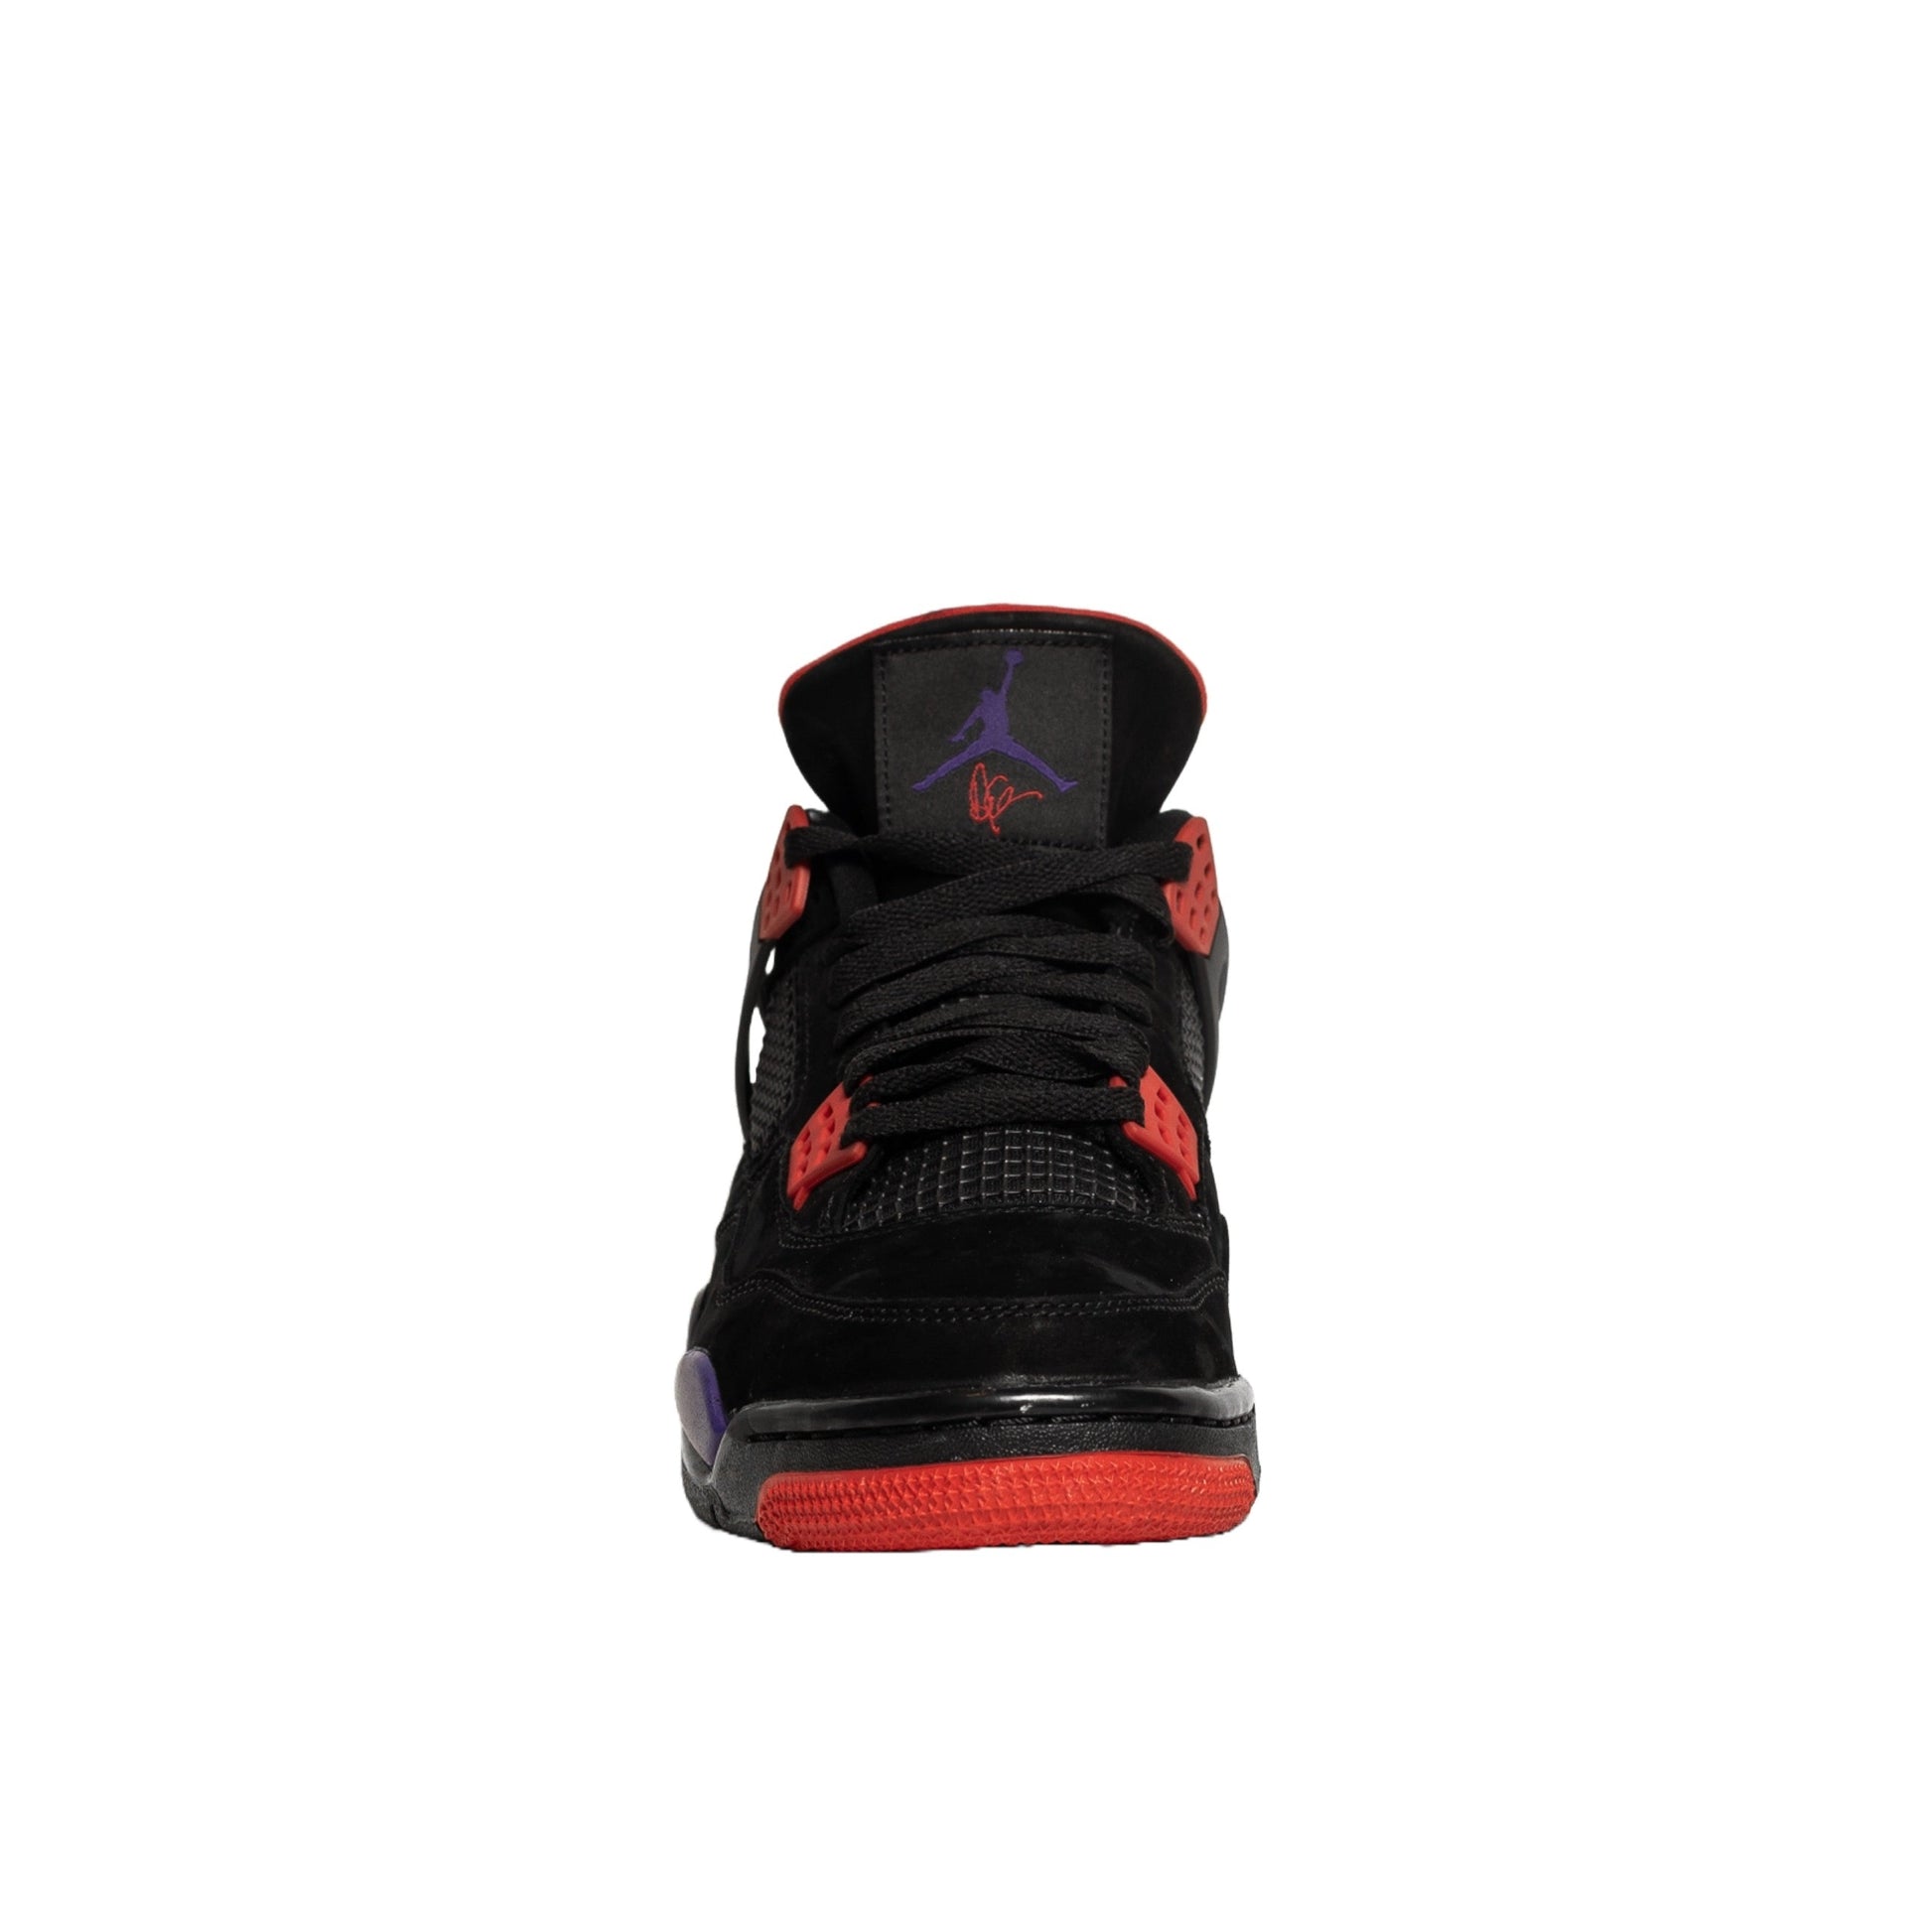 Air Jordan 4, NRG Raptors - Drake Signature